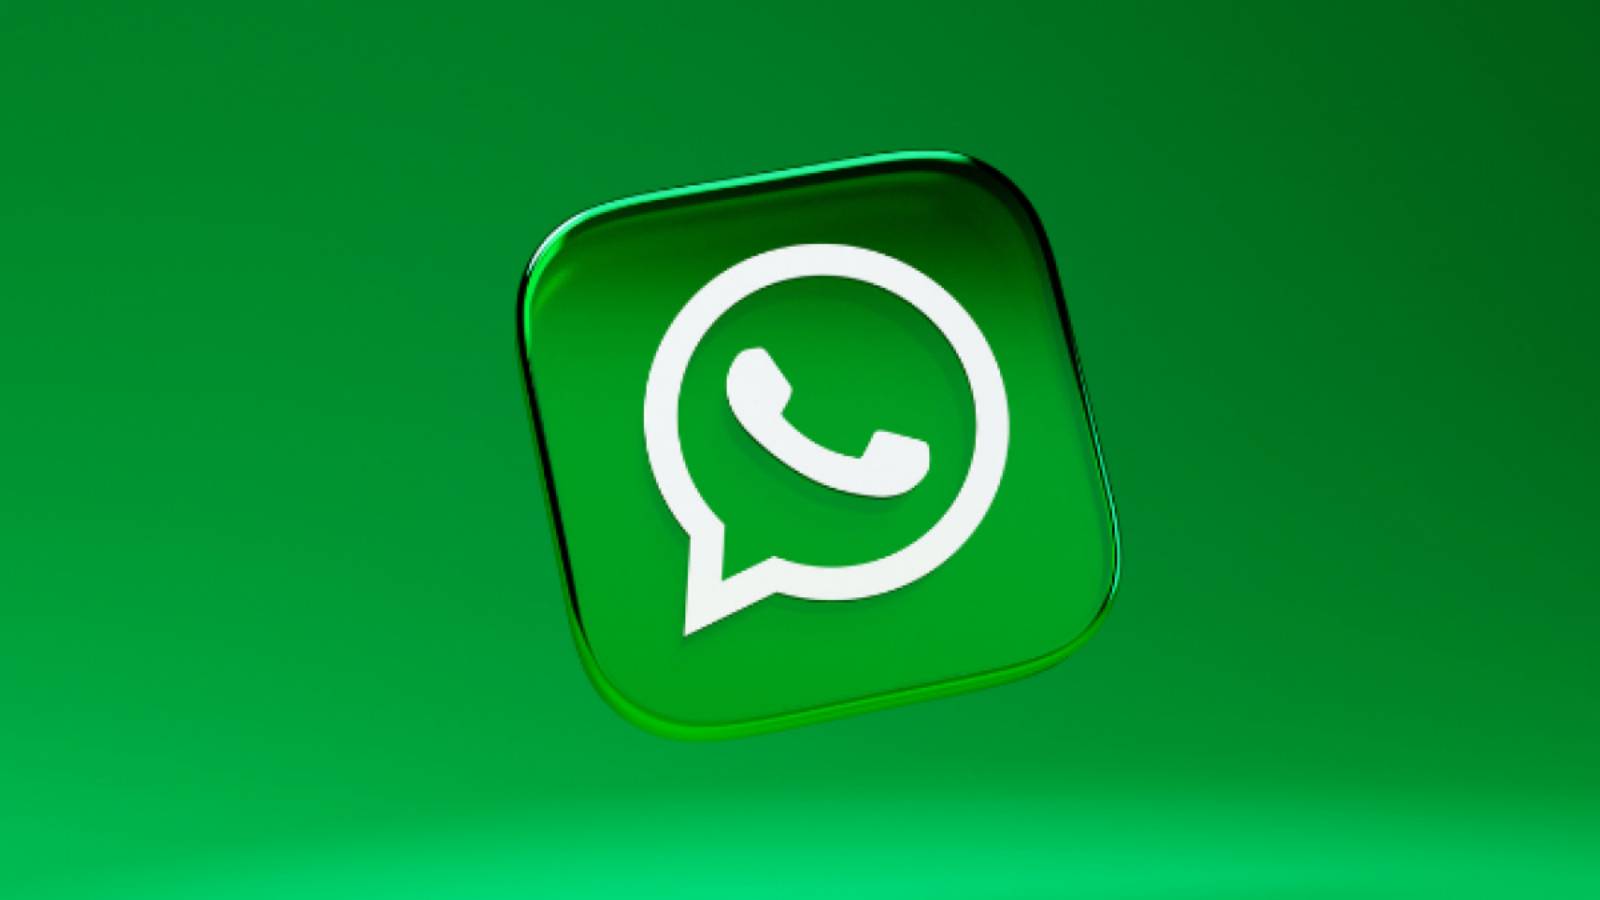 WhatsApp-probleem FRUSTREERT honderden MILJOEN mensentelefoons